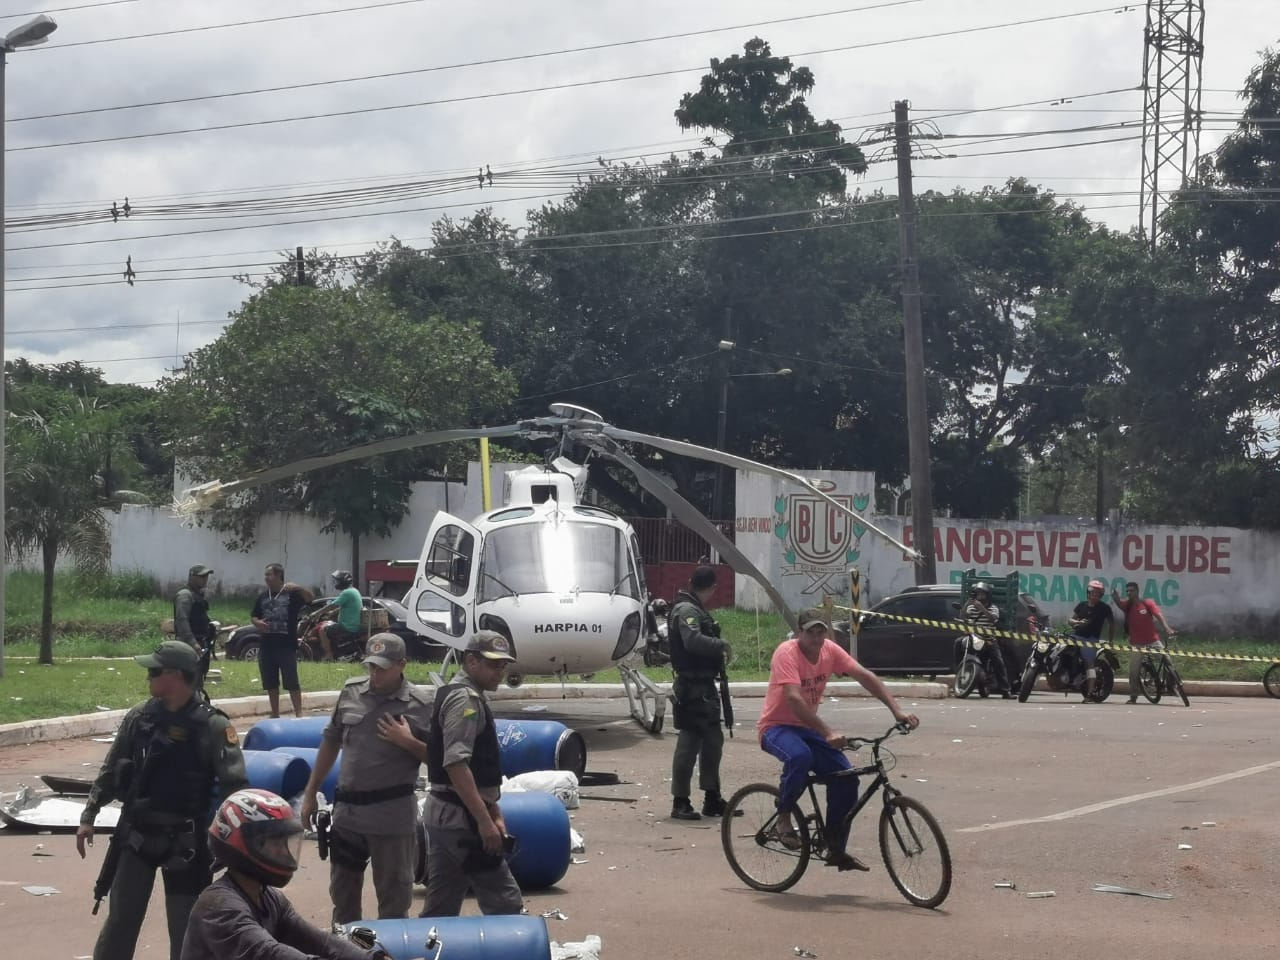 #URGENTE Helicóptero do governo tenta decolar em Rio Branco e bate hélice em caminhão - ac24horas.com - Notícias do Acre